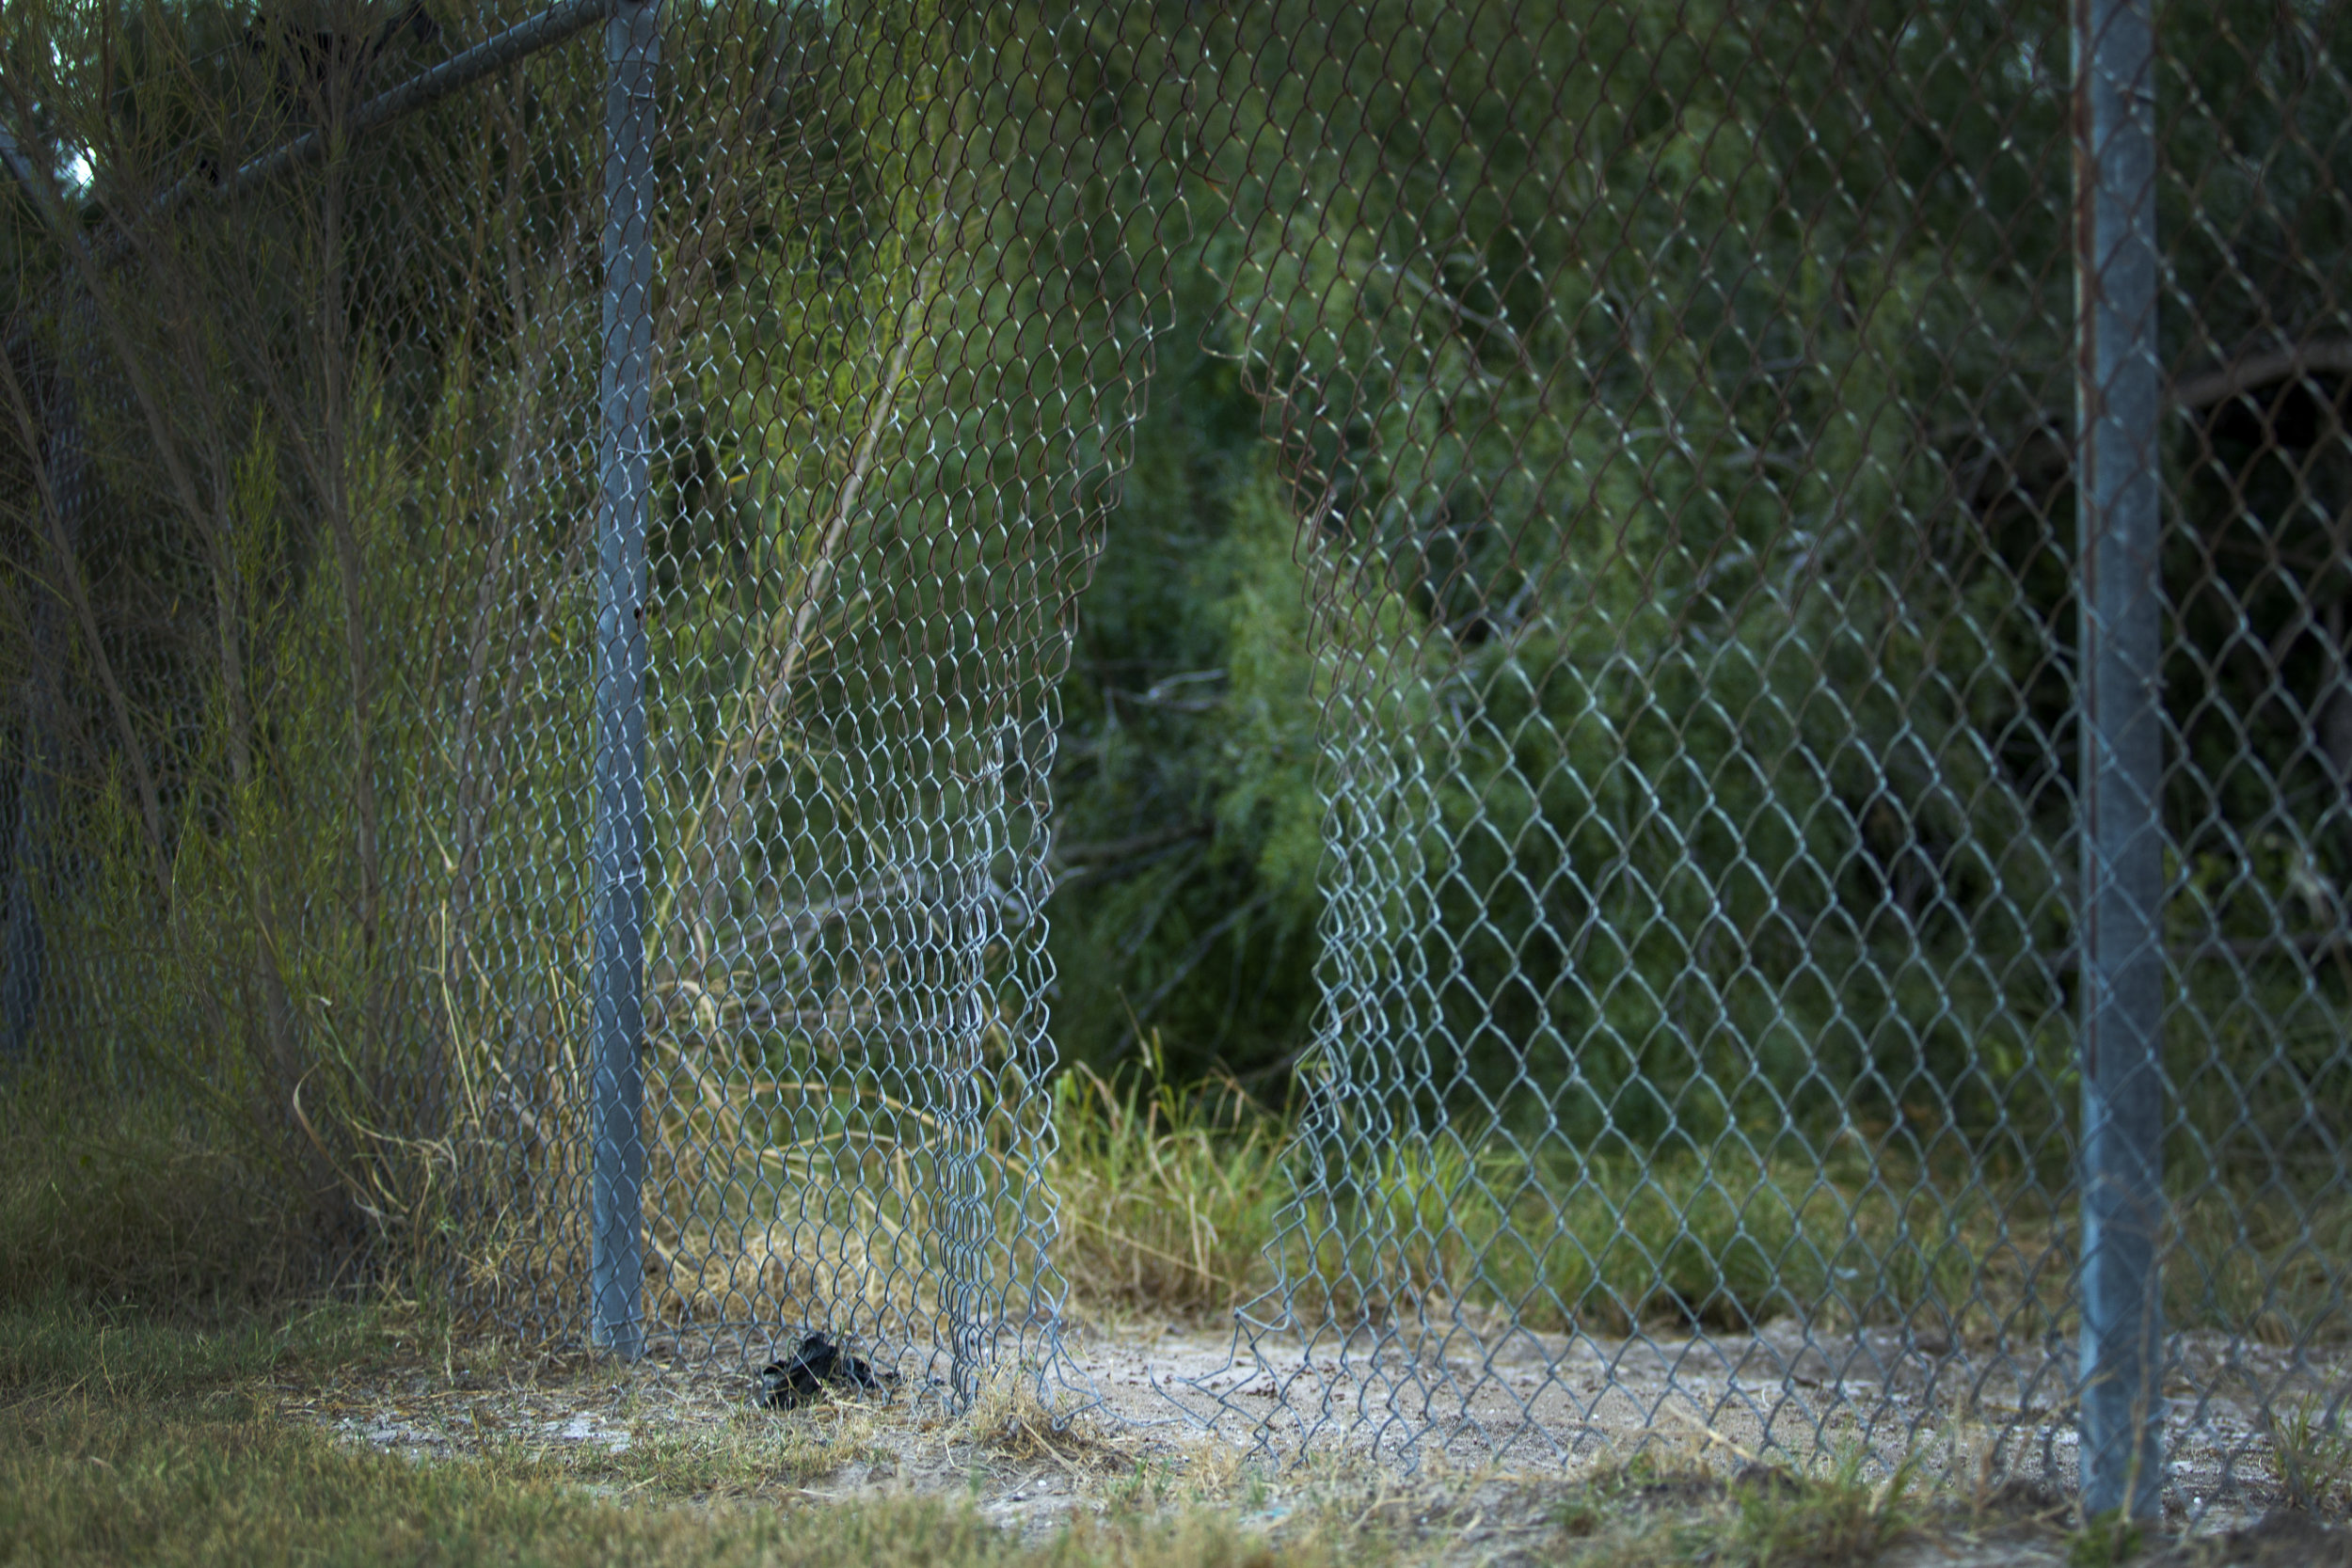  MCALLEN, TX. A hole cut in fencing near the Anzalduas International Bridge, spotted by Border Patrol. 